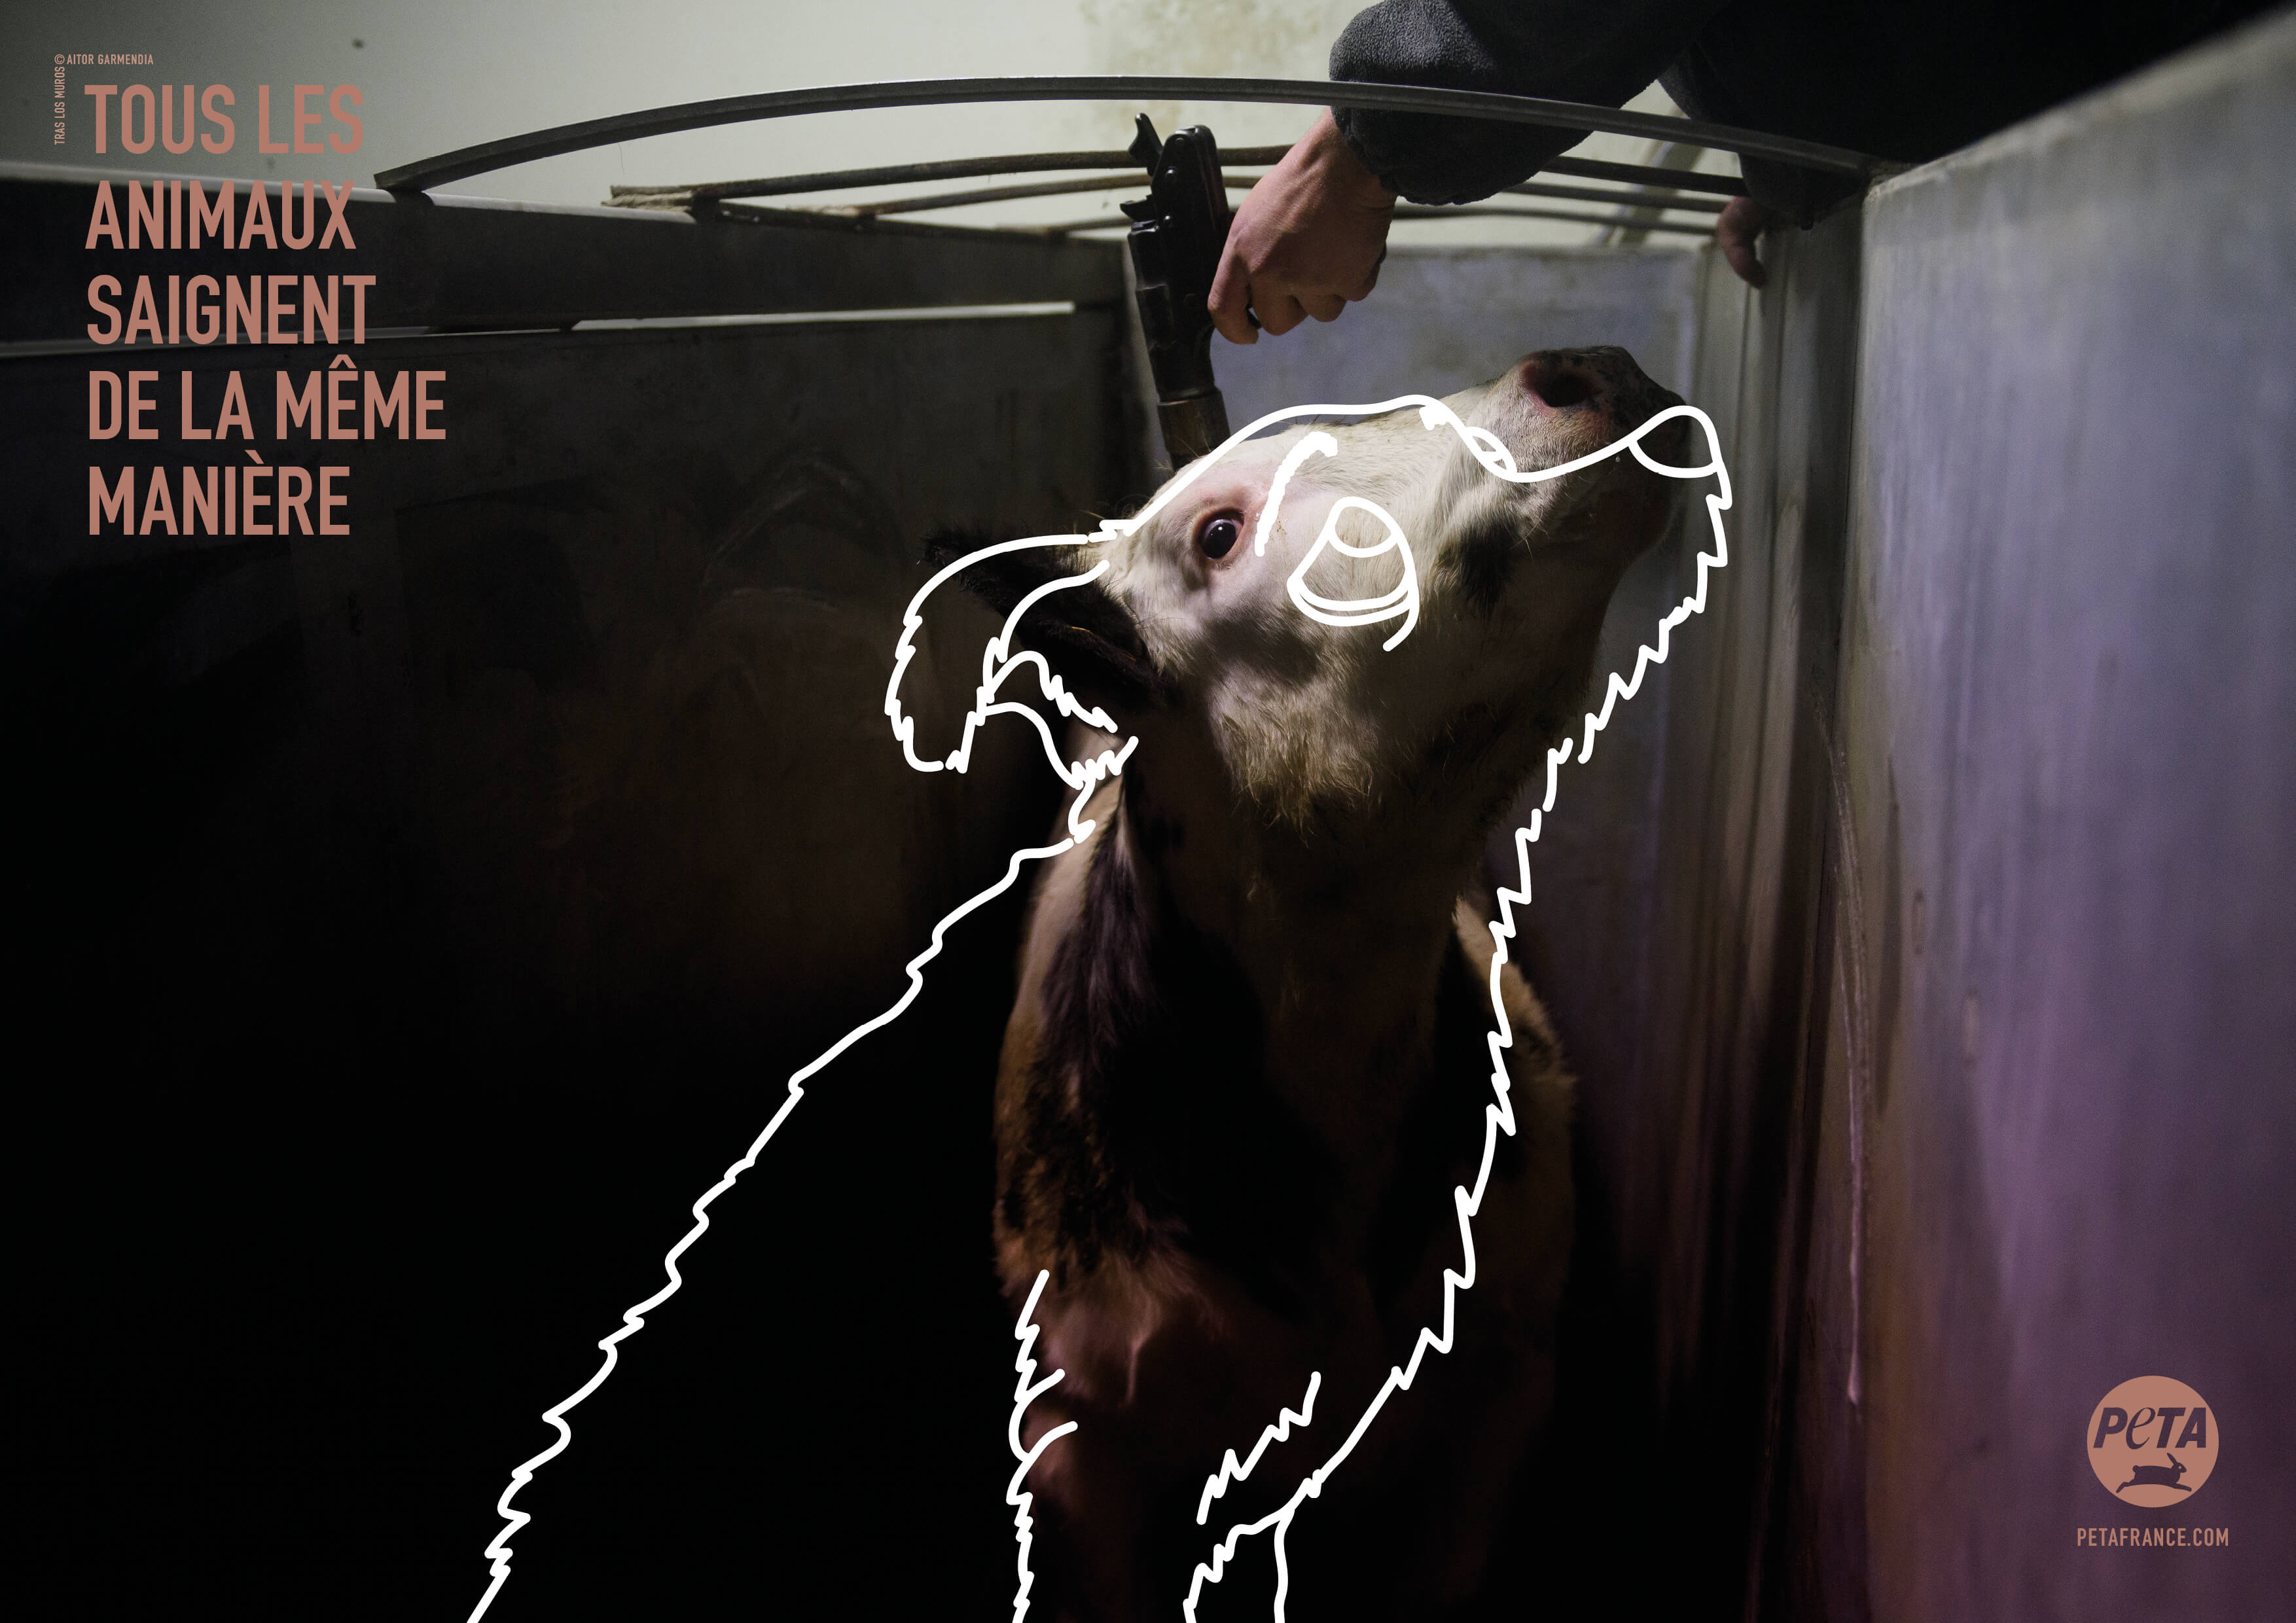 « Tous les animaux saignent de la même manière » : une nouvelle campagne remet le spécisme en question